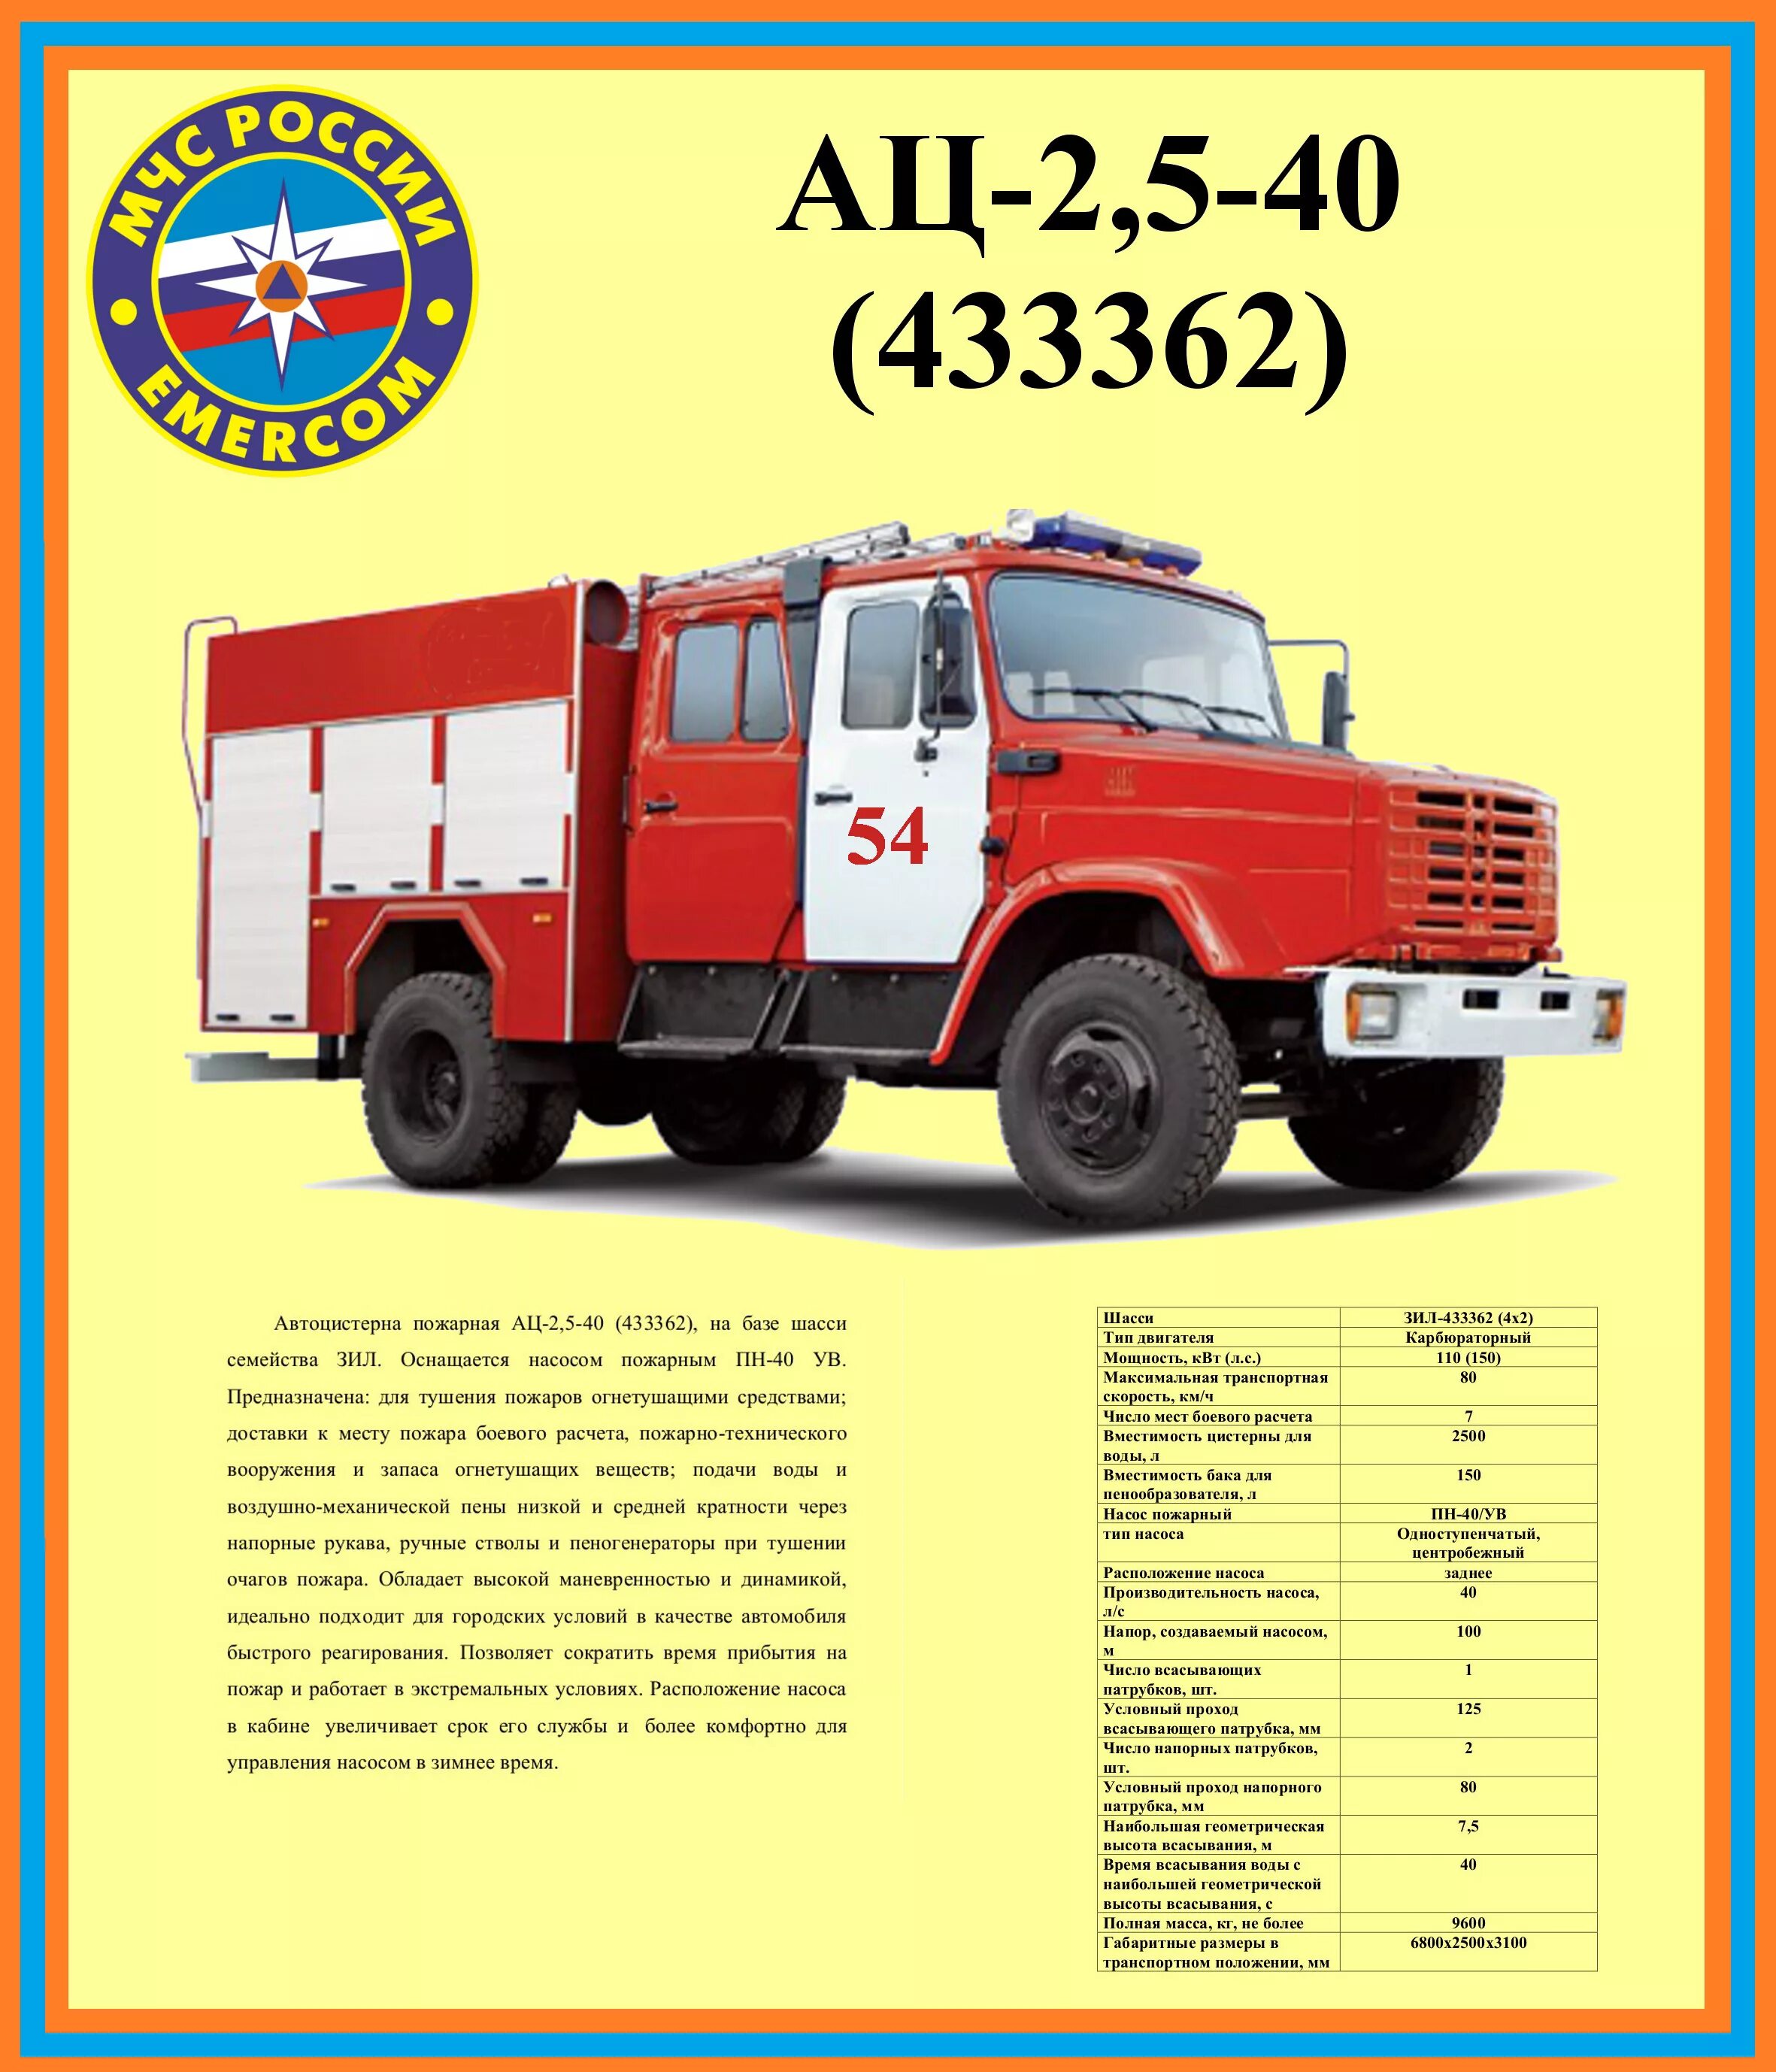 ТТХ ЗИЛ 130 пожарный. ТТХ ЗИЛ 131 пожарный автомобиль АЦ. ТТХ пожарного автомобиля ЗИЛ-130 ЗИЛ-131. Пожарная машина ЗИЛ 131 технические характеристики.